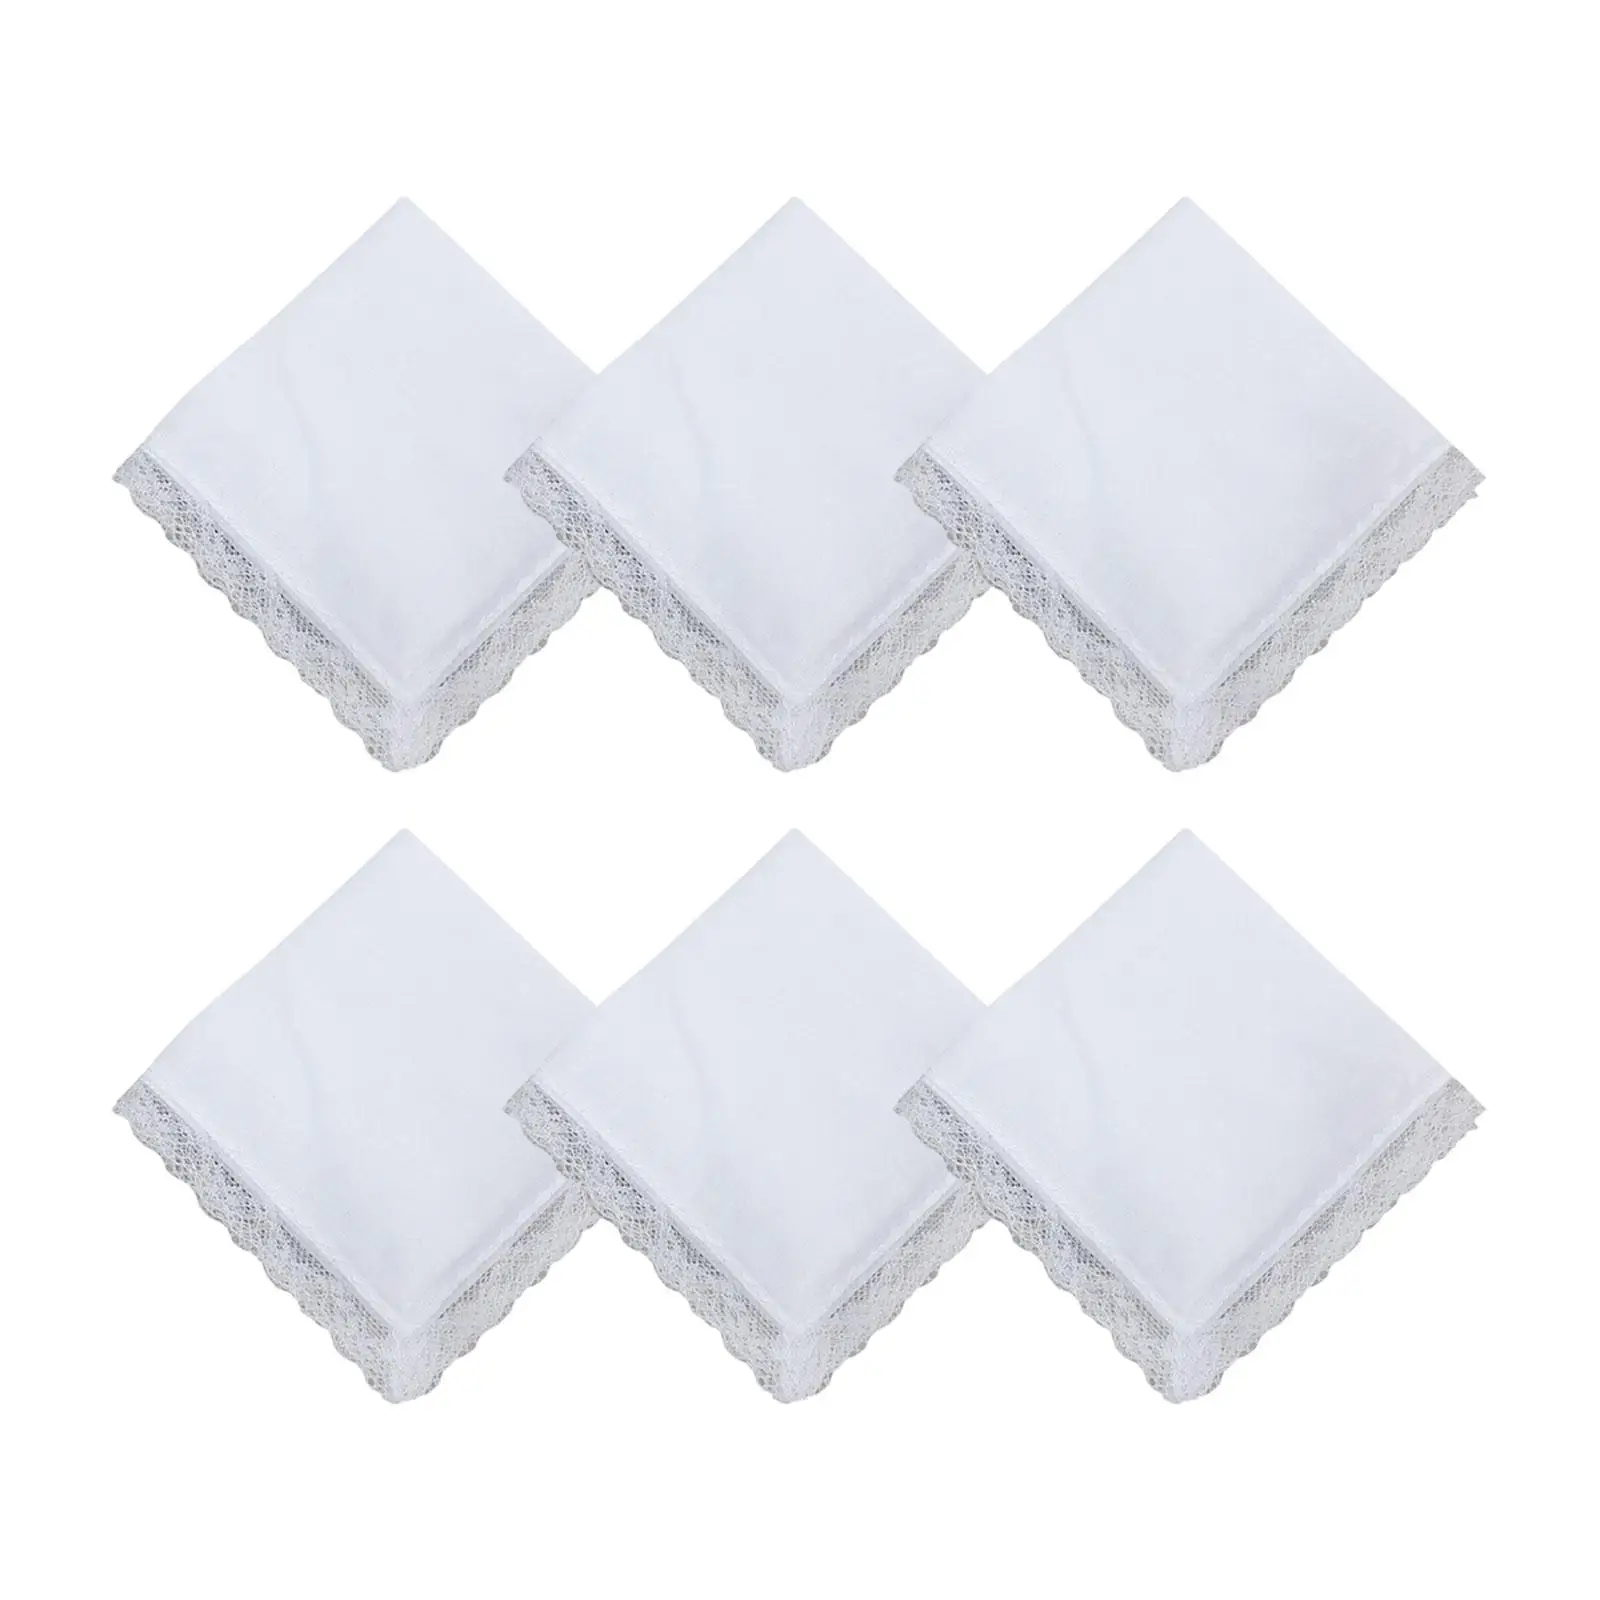 6 Pieces Pure White Cotton Handkerchief Washable DIY Painting with Lace Edge Kerchiefs for Men Ladies Women Children Christmas